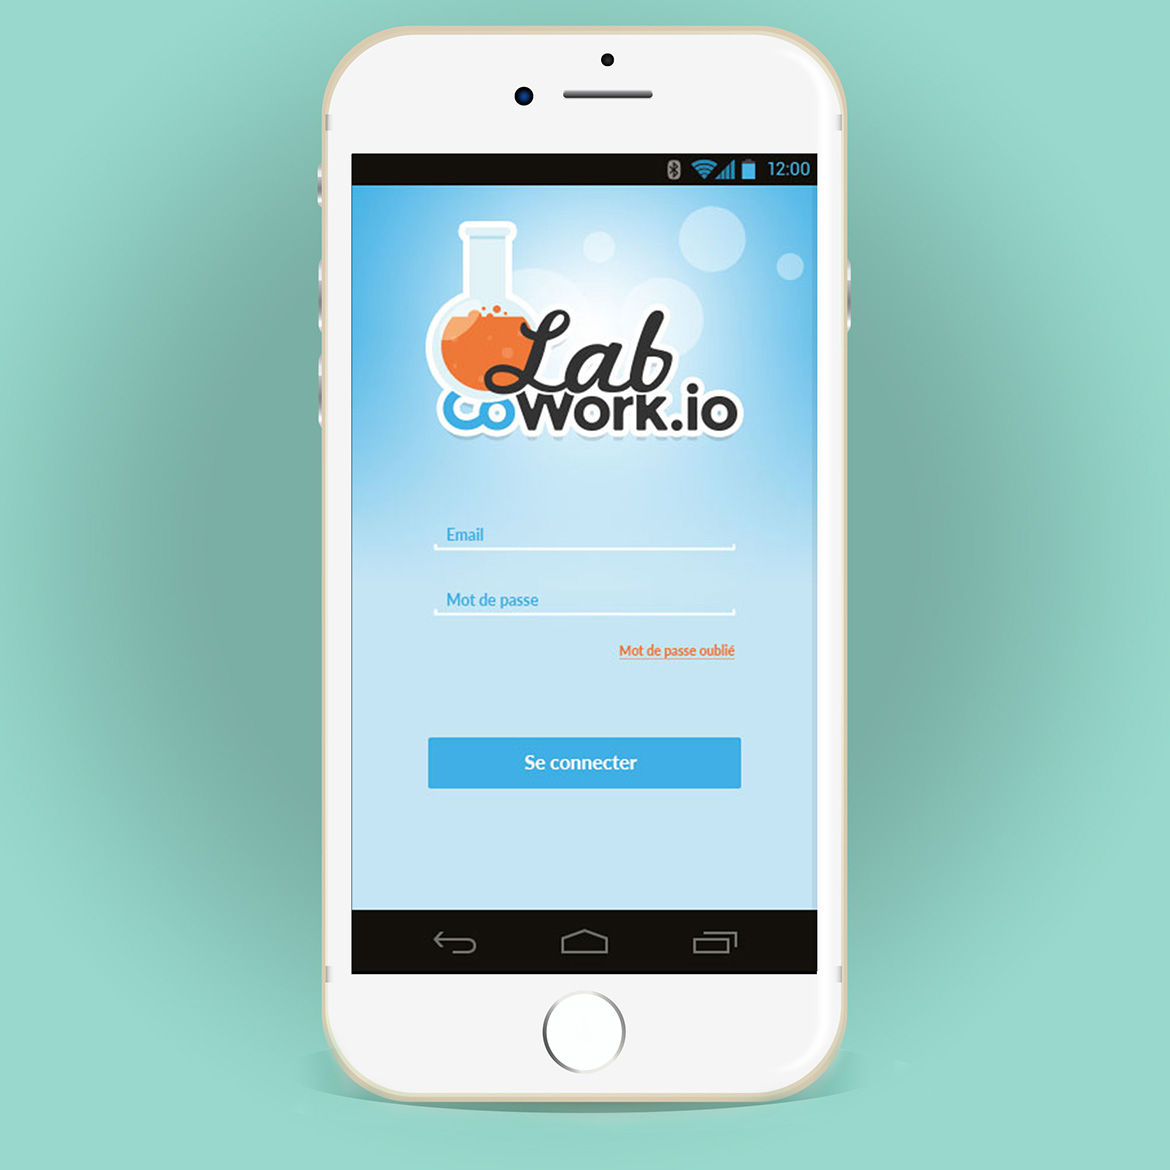 Lab CoWork.io - Identité visuelle & Application mobile